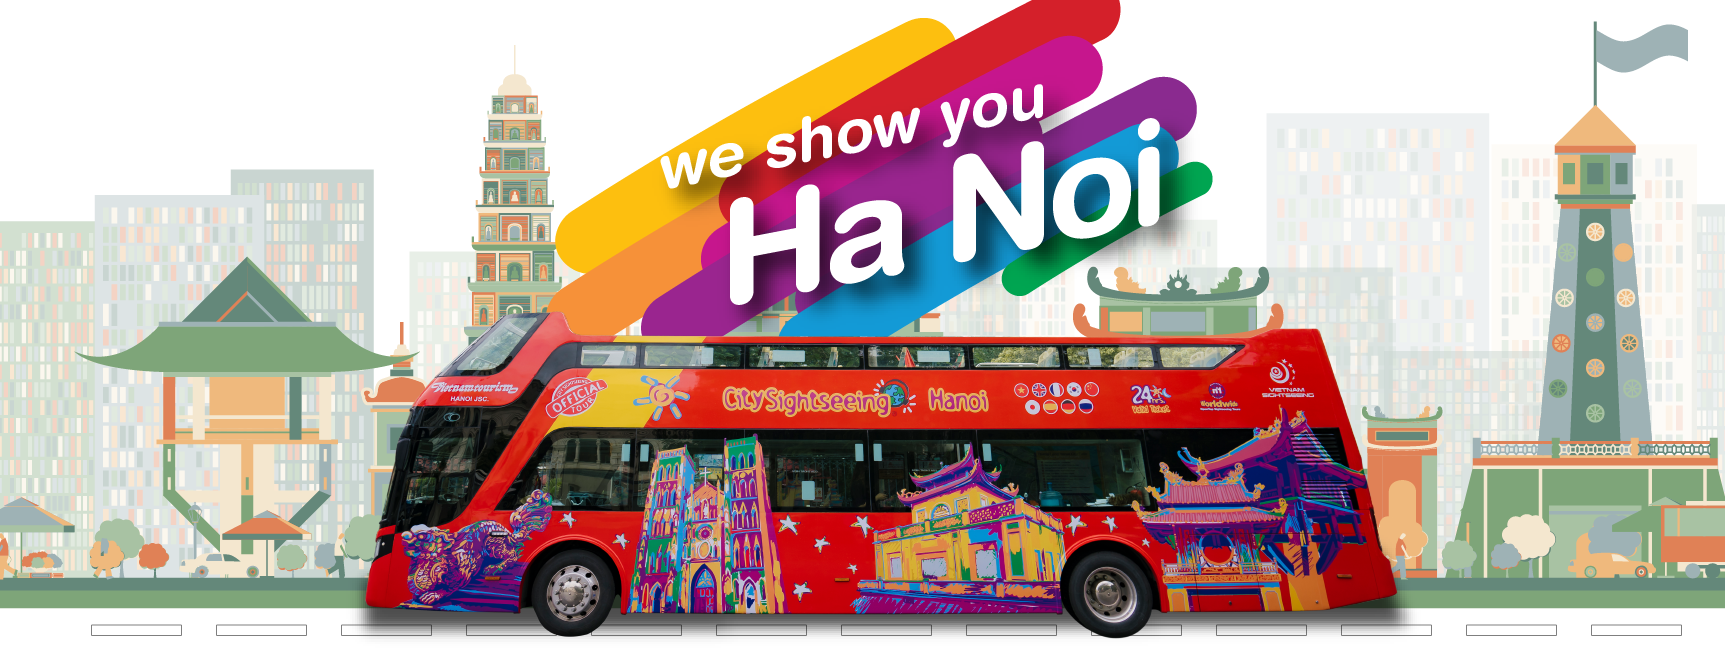 Hãy cùng xem bức tranh liệt kê các điểm đến hấp dẫn trong hành trình du lịch Việt Nam của chúng tôi, để có thêm ý tưởng cho kế hoạch du lịch của bạn!